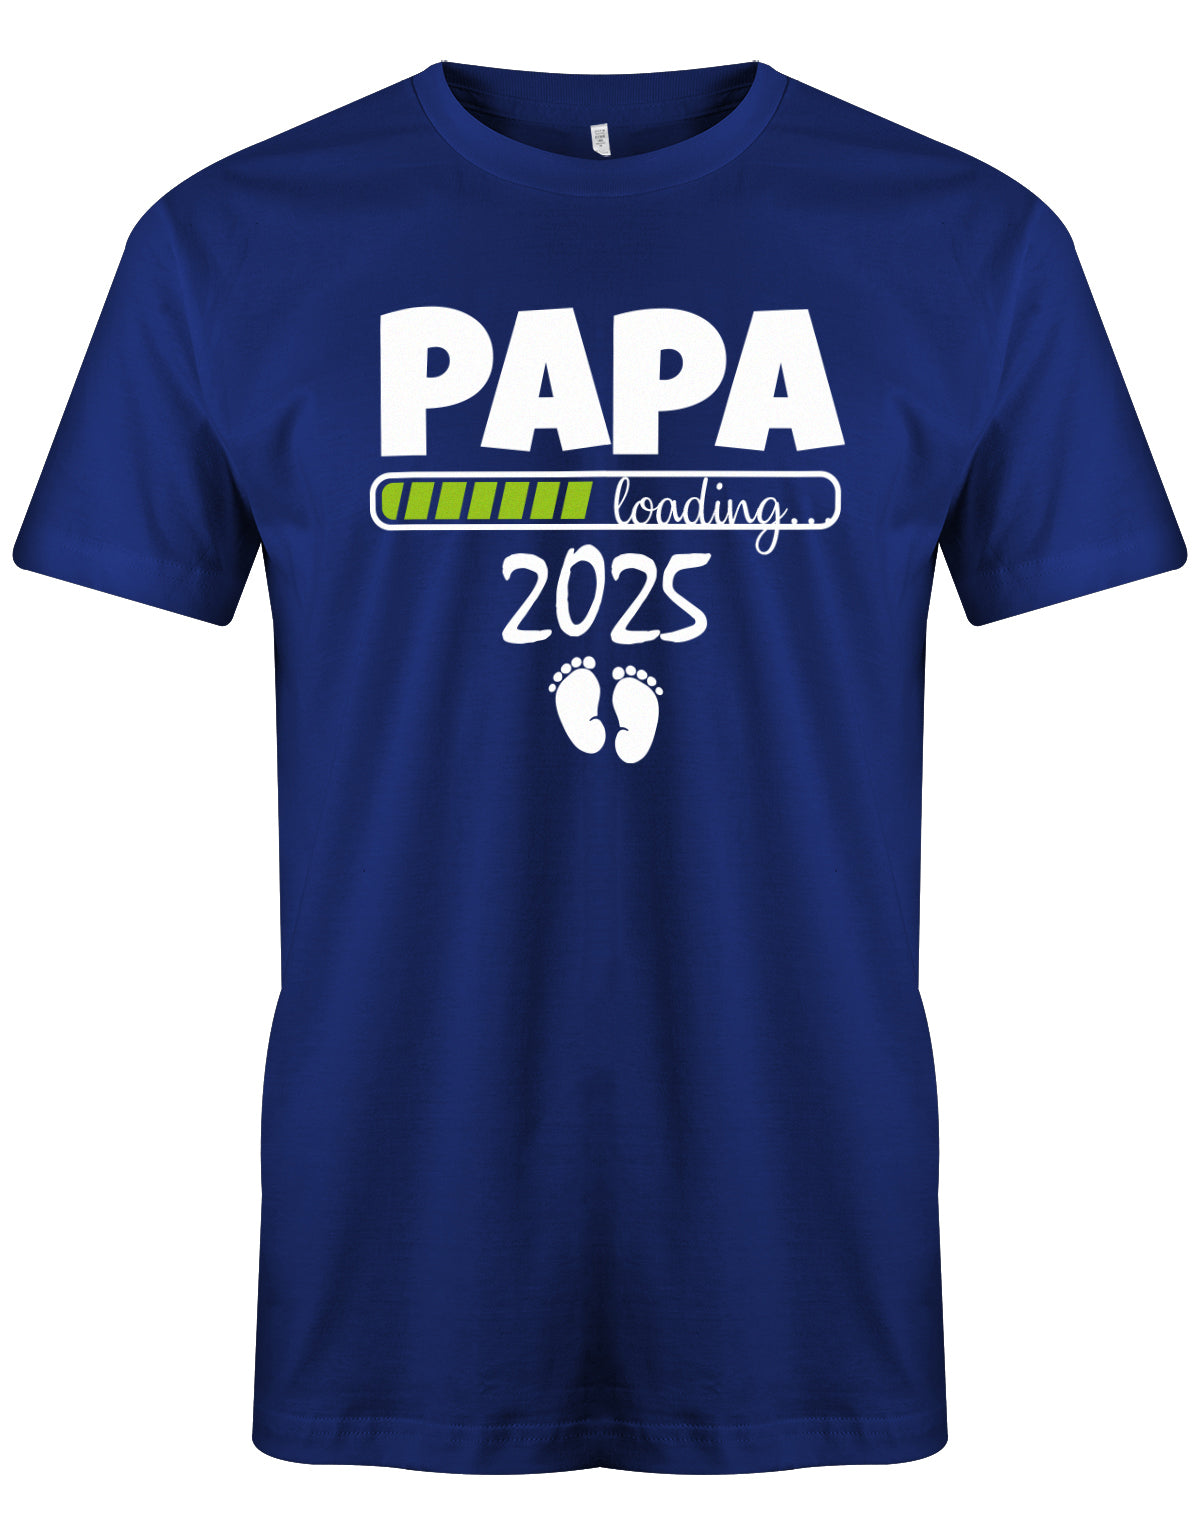 Papa Loading 2025 - Werdender Papa Shirt Herren Royalblau